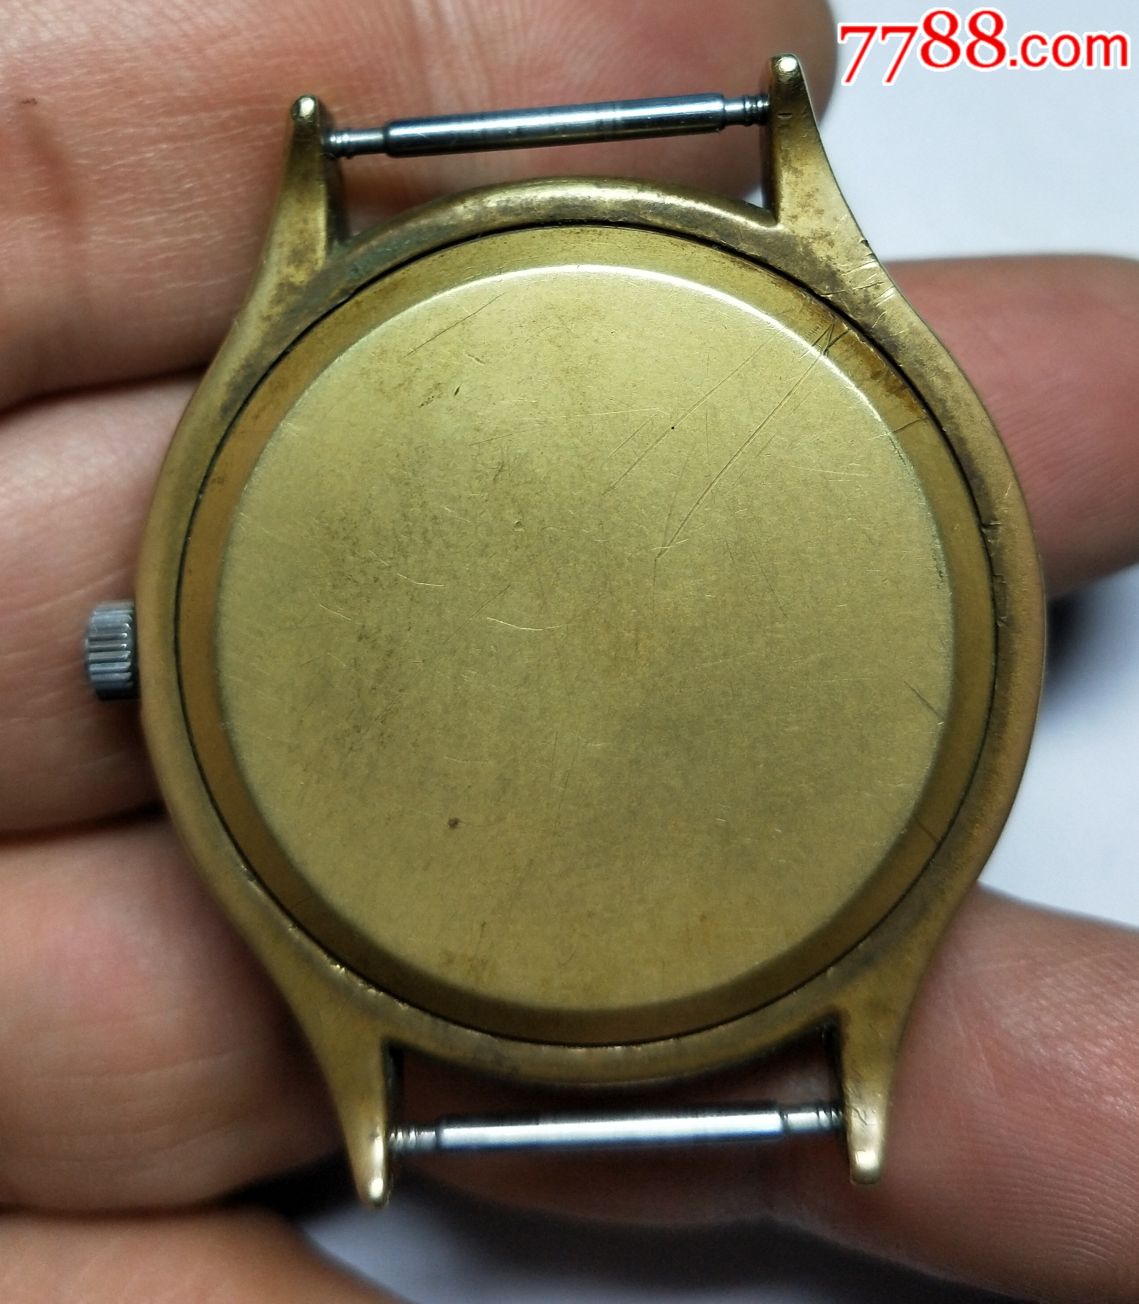 全铜壳欧米茄手表-价格:10.0000元-au19899323-手表